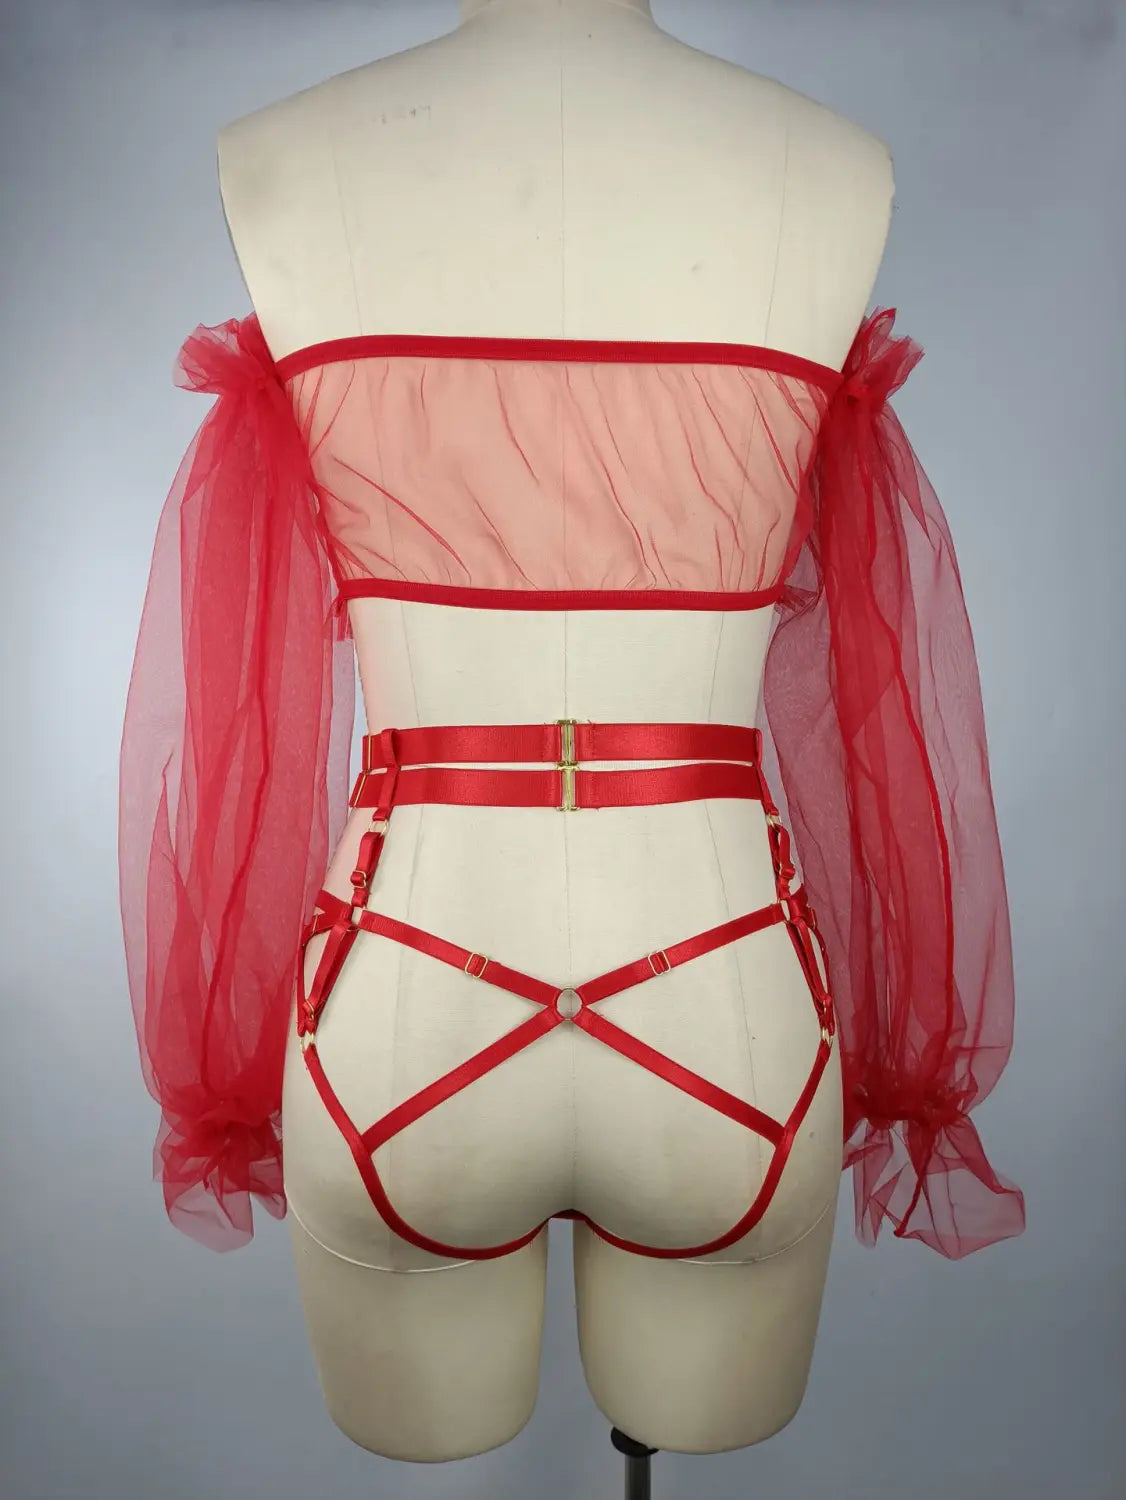 Seductive Sheer Mesh Lingerie Set - Alluring Lace Uniform With Cutouts